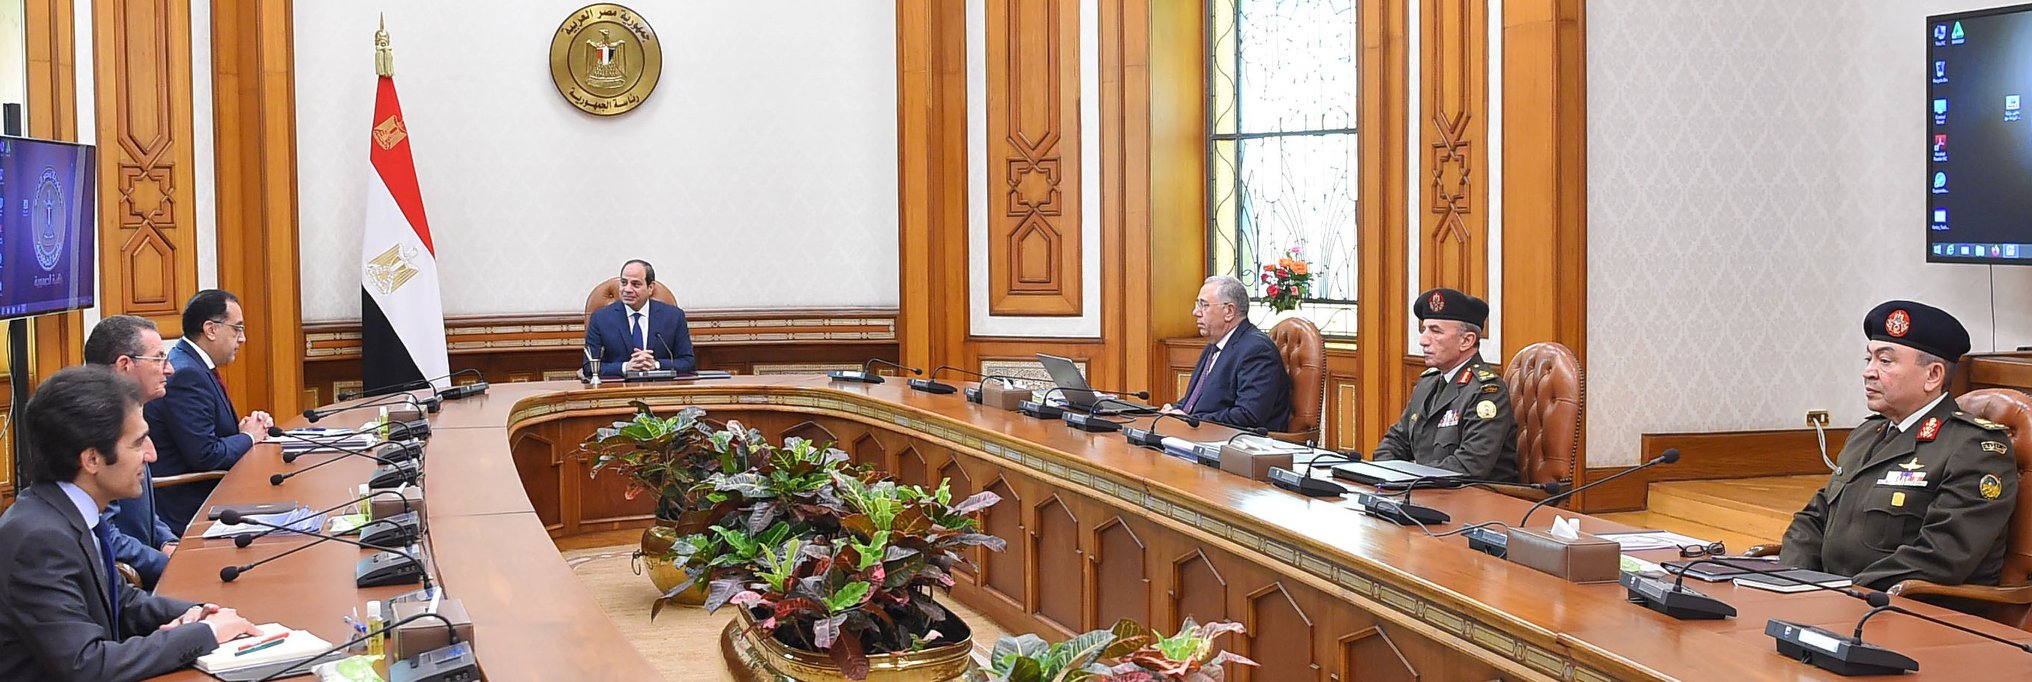   بسام راضى: الرئيس السيسى يوجه بزيادة رقعة الأراضي الزراعية المستصلحة